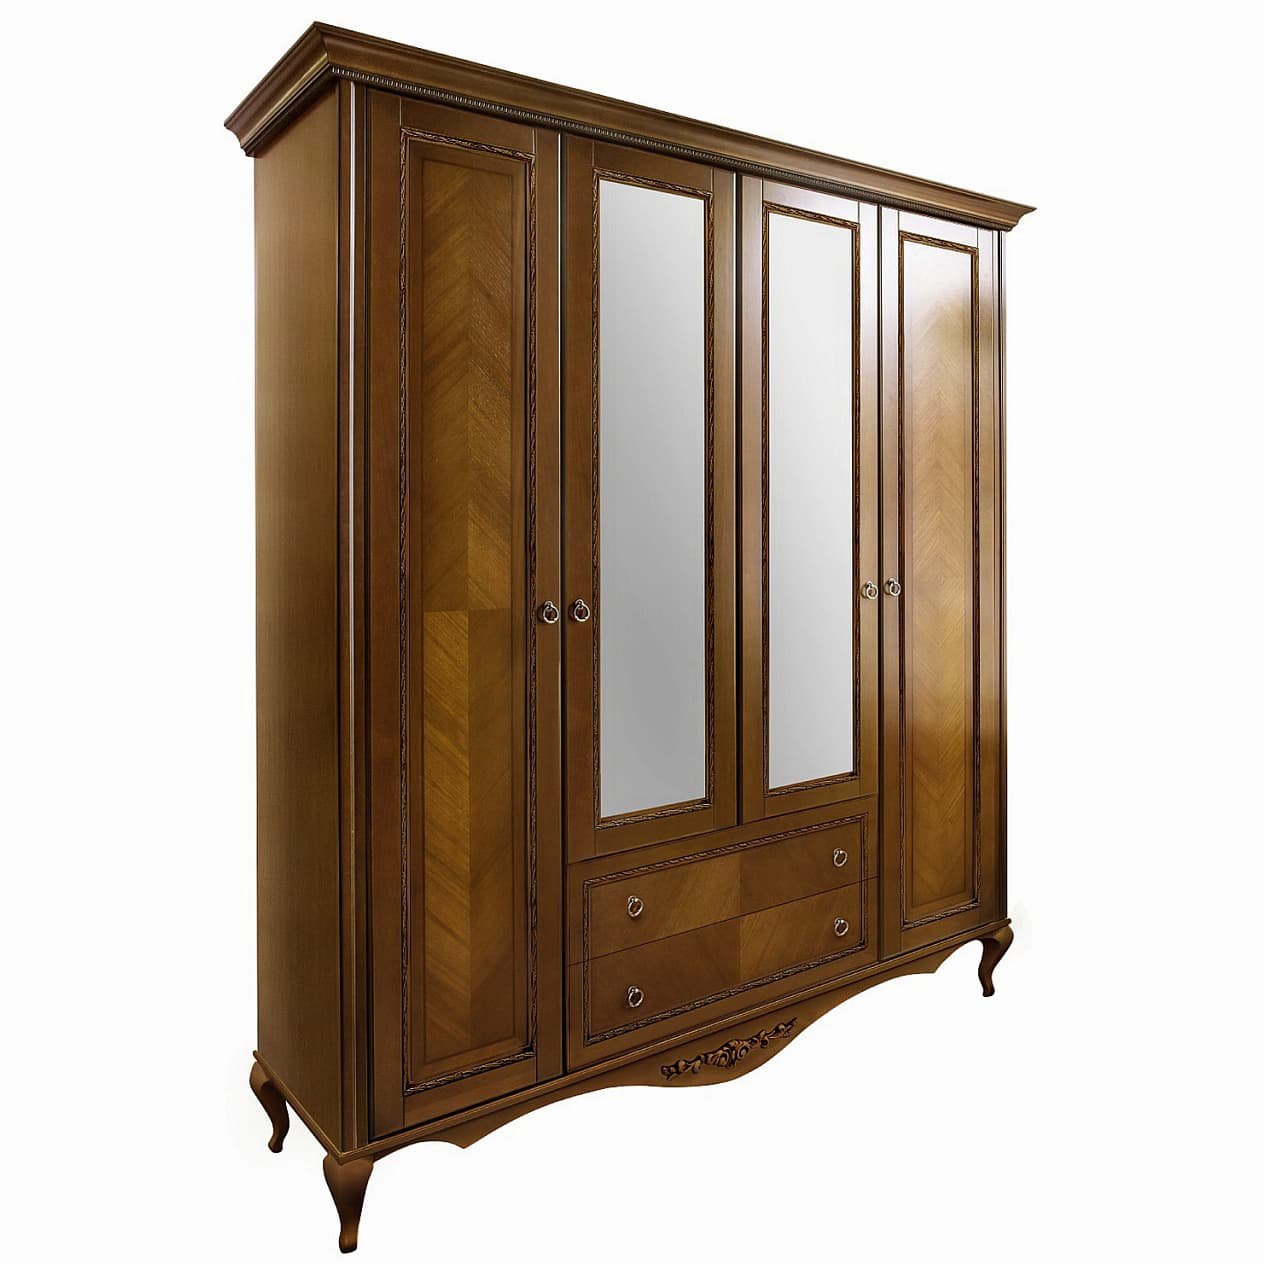 Шкаф платяной Timber Неаполь, 4-х дверный с зеркалами 204x65x227 см, цвет: орех (Т-524/N)Т-524